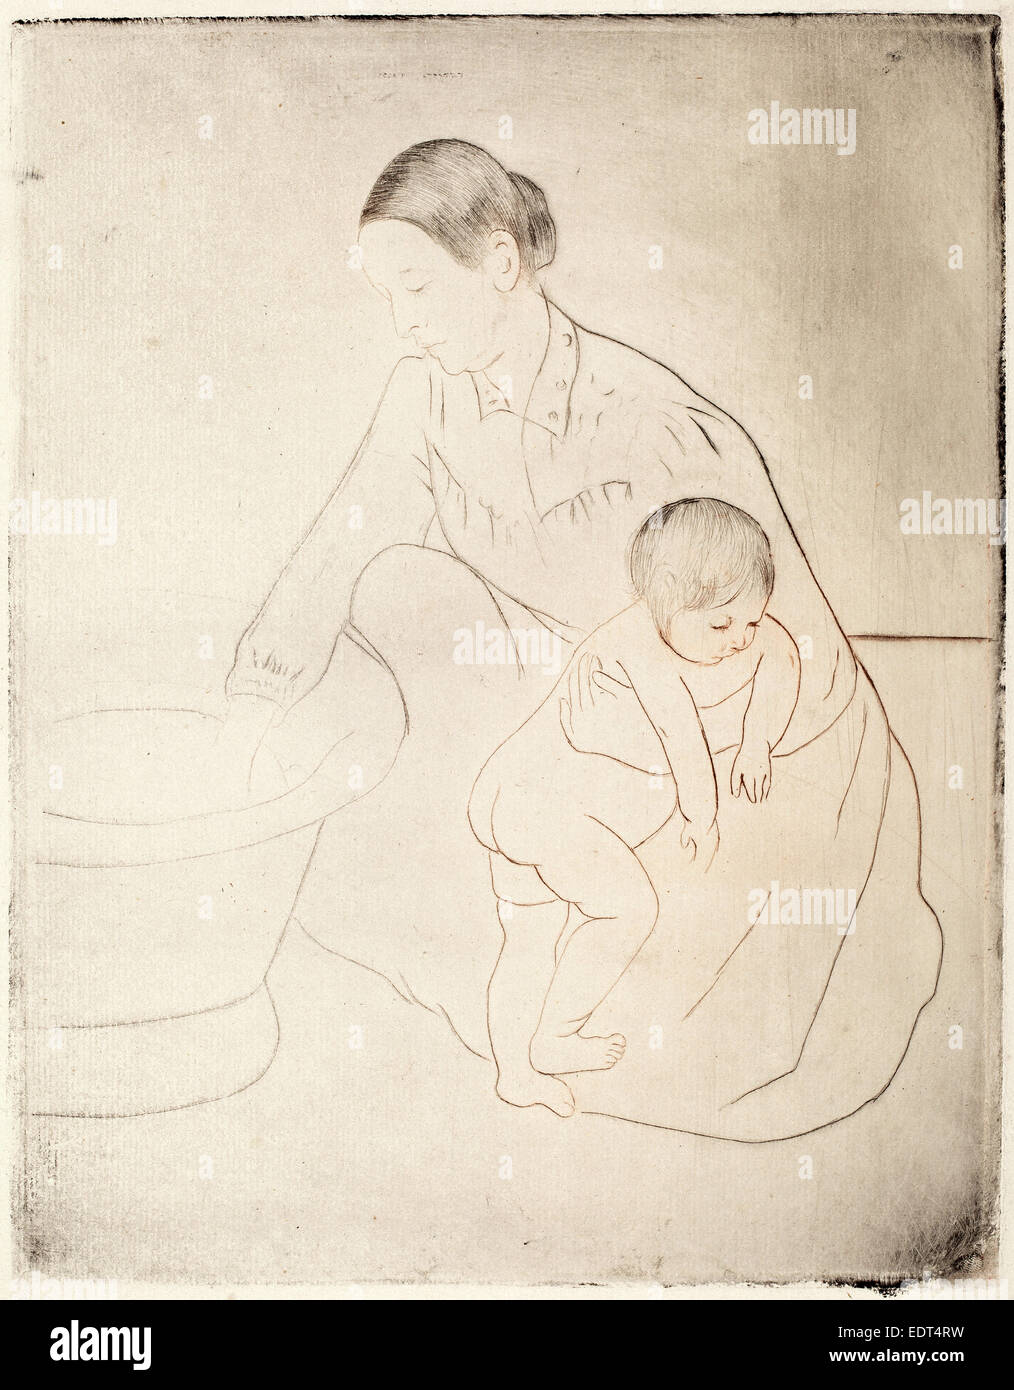 Mary Cassatt, la baignoire, cuisine américaine, 1844 - 1926, ch. 1891, pointe sèche et douce au sol-eau-forte Banque D'Images